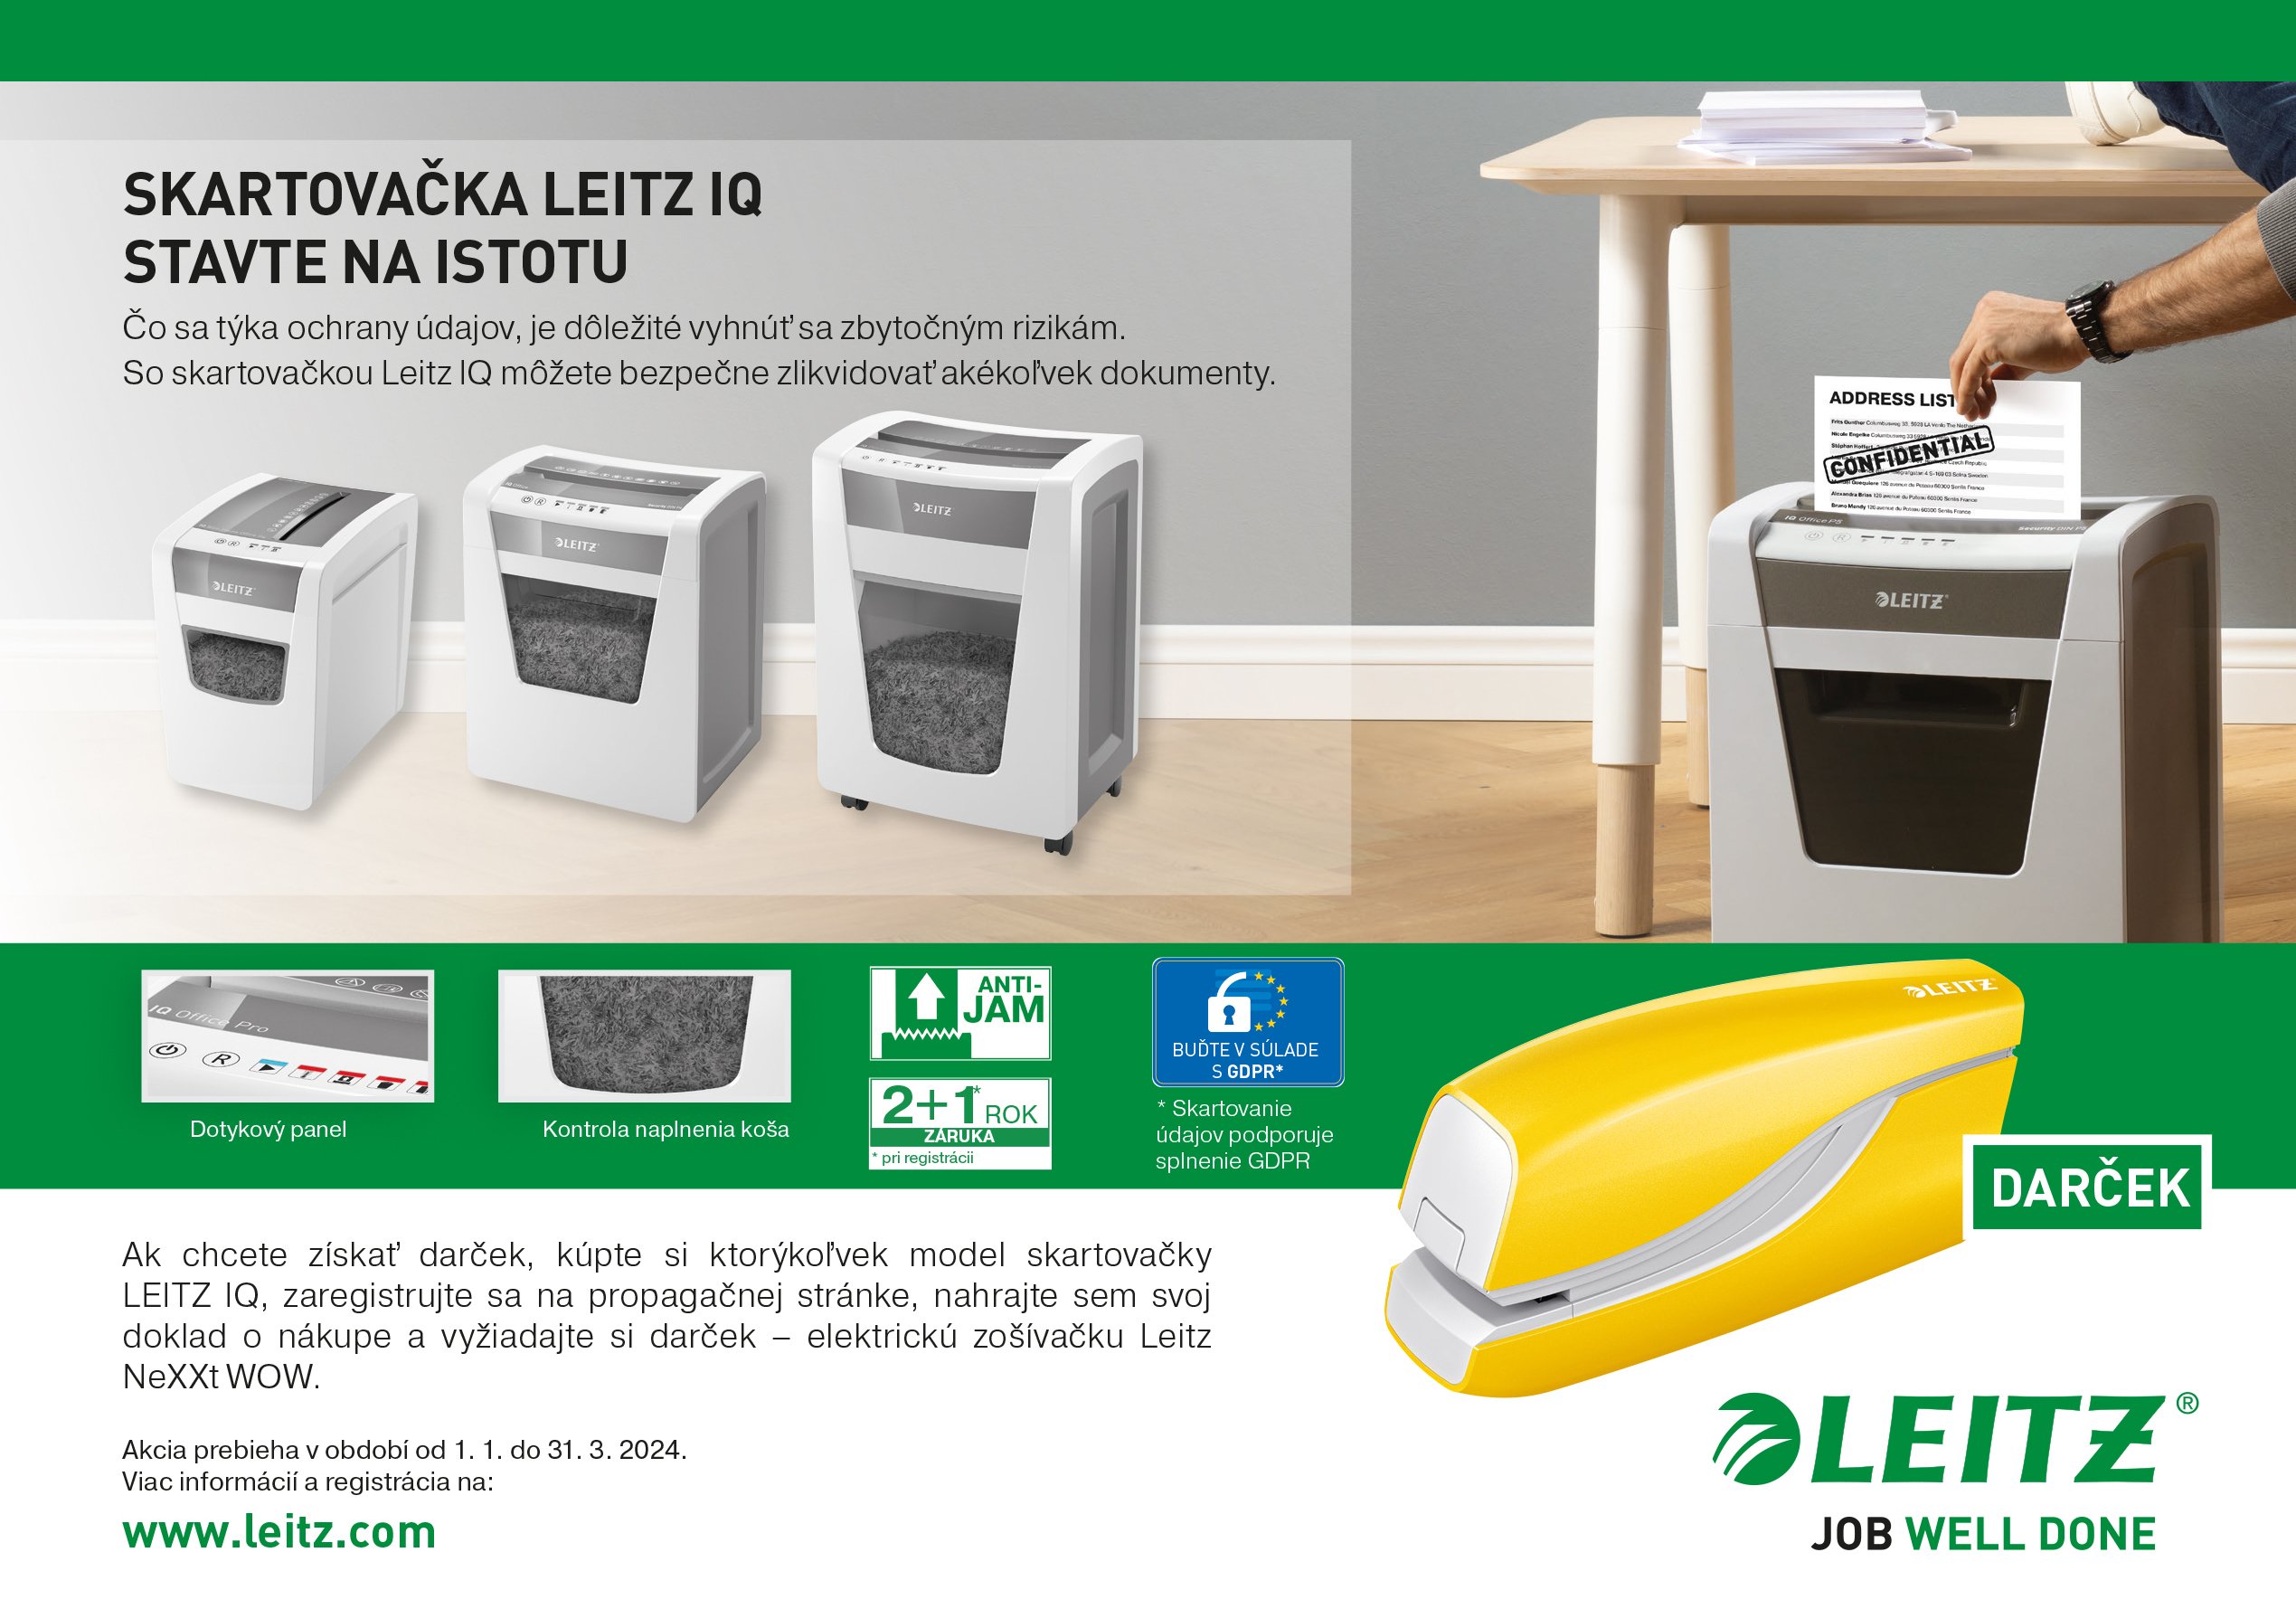 CBT43785 ad Leitz IQ promo electric stapler SK v2 print